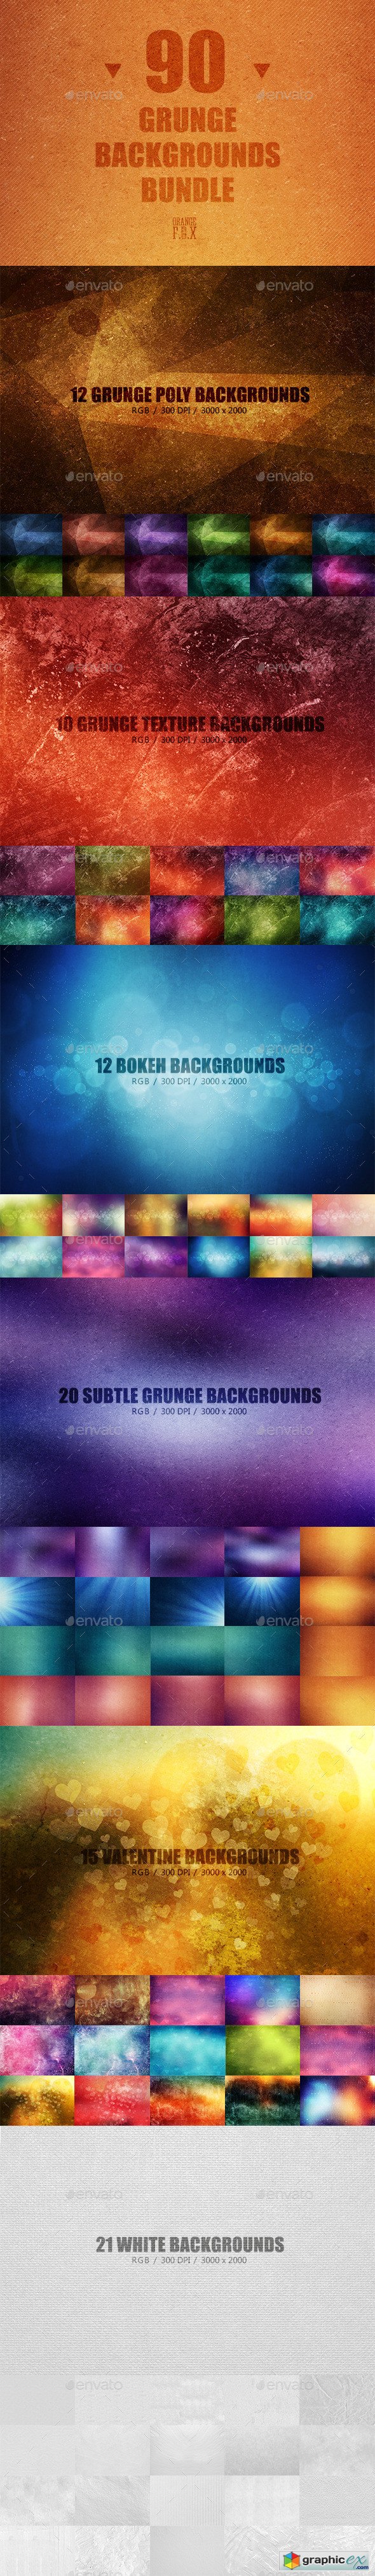 90 Grunge Backgrounds Bundle